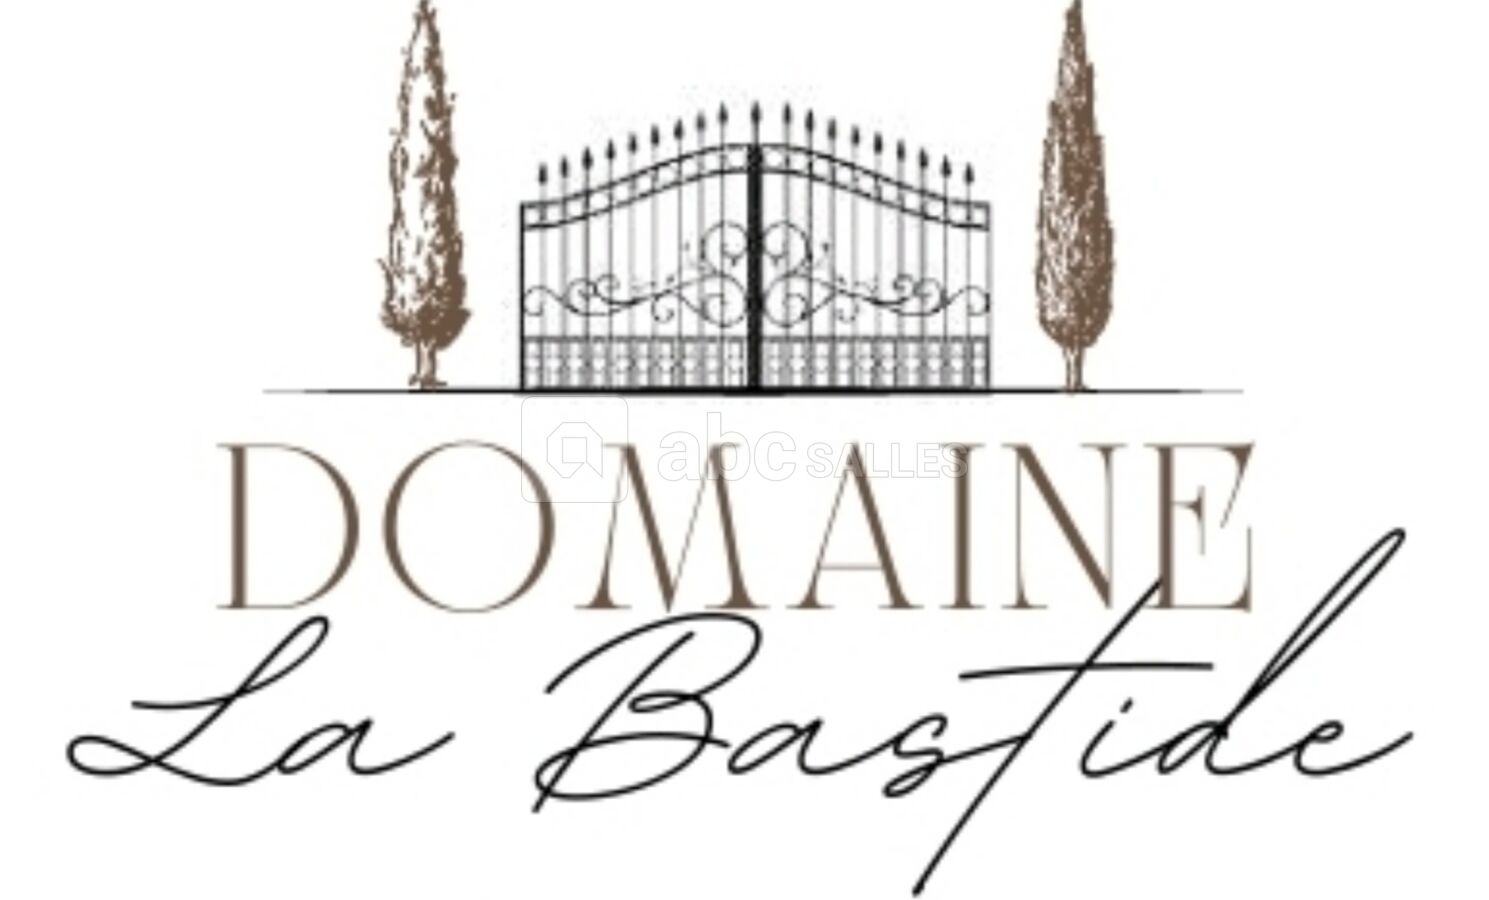 Domaine La Bastide